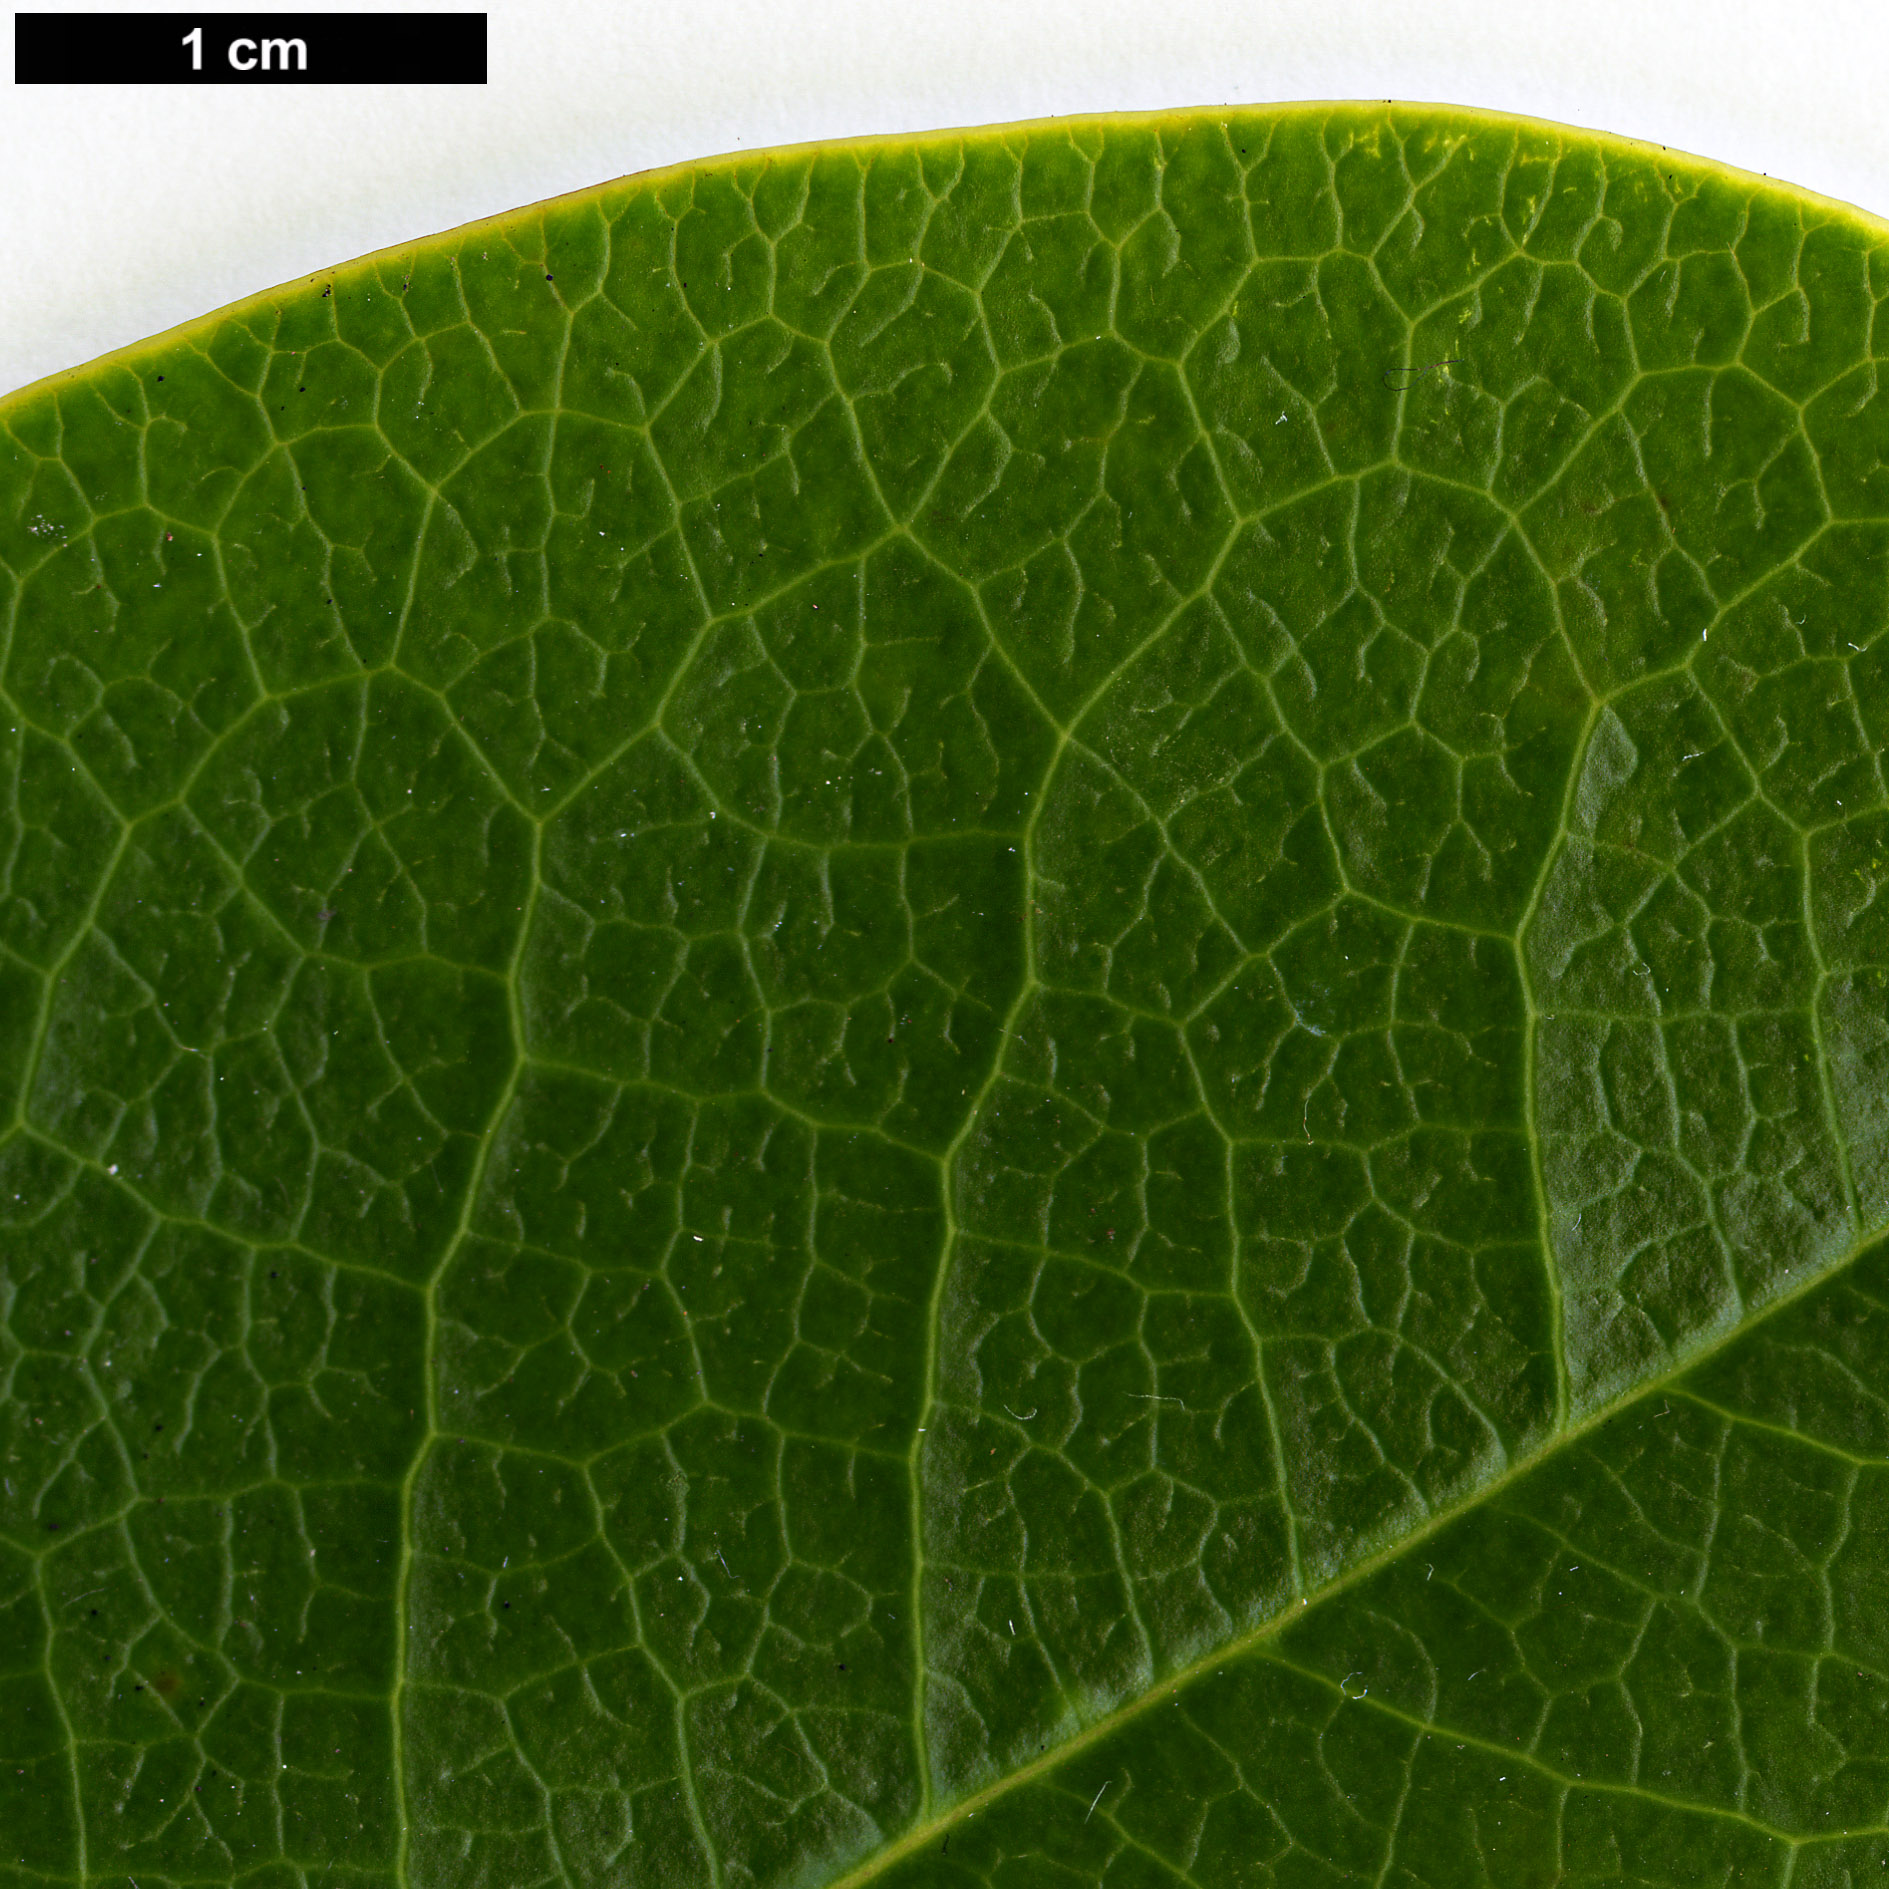 High resolution image: Family: Magnoliaceae - Genus: Magnolia - Taxon: conifera